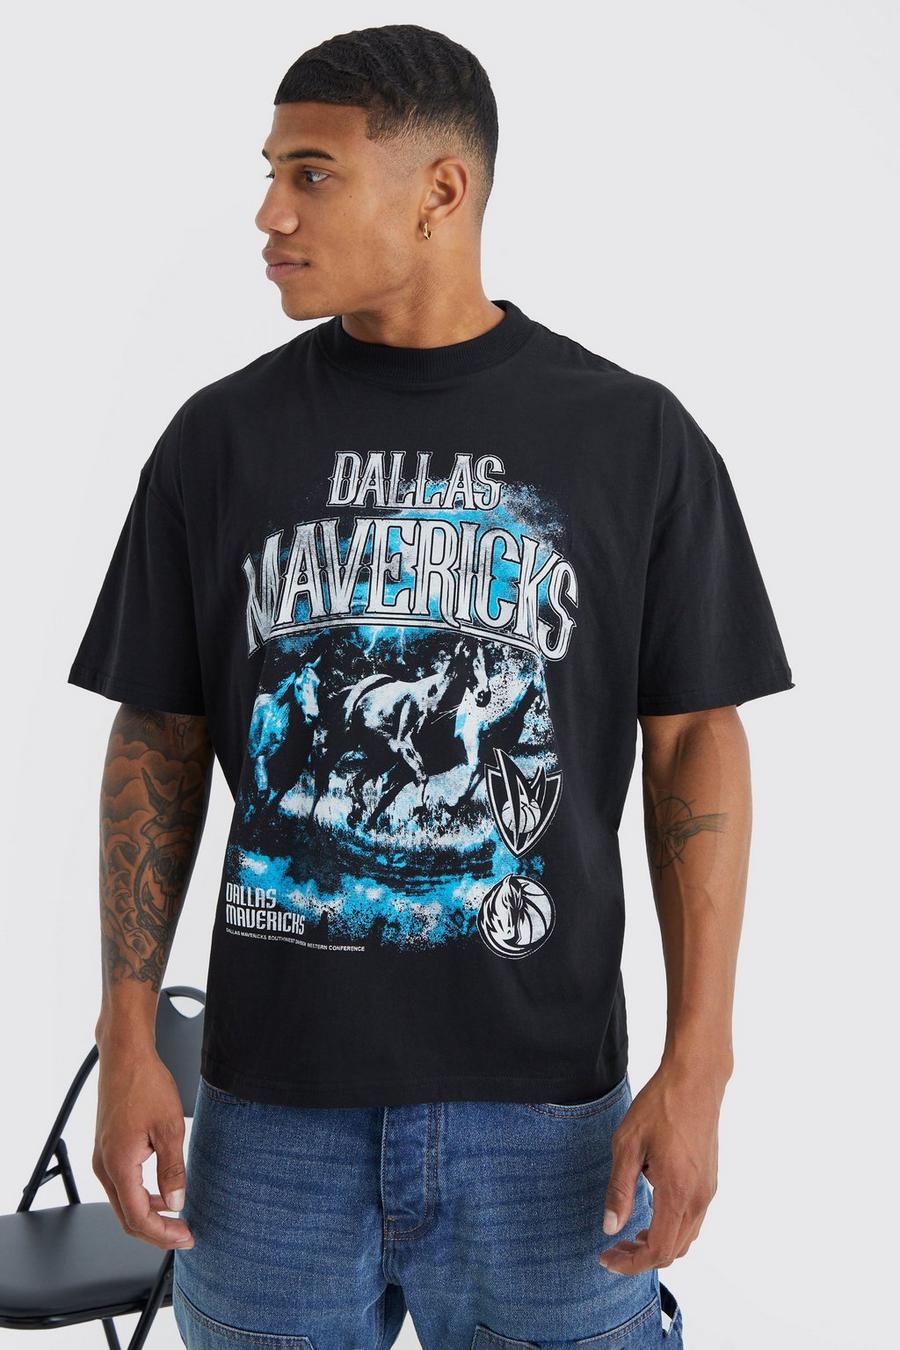 Camiseta con estampado de Dallas Mavericks de la NBA, Black nero